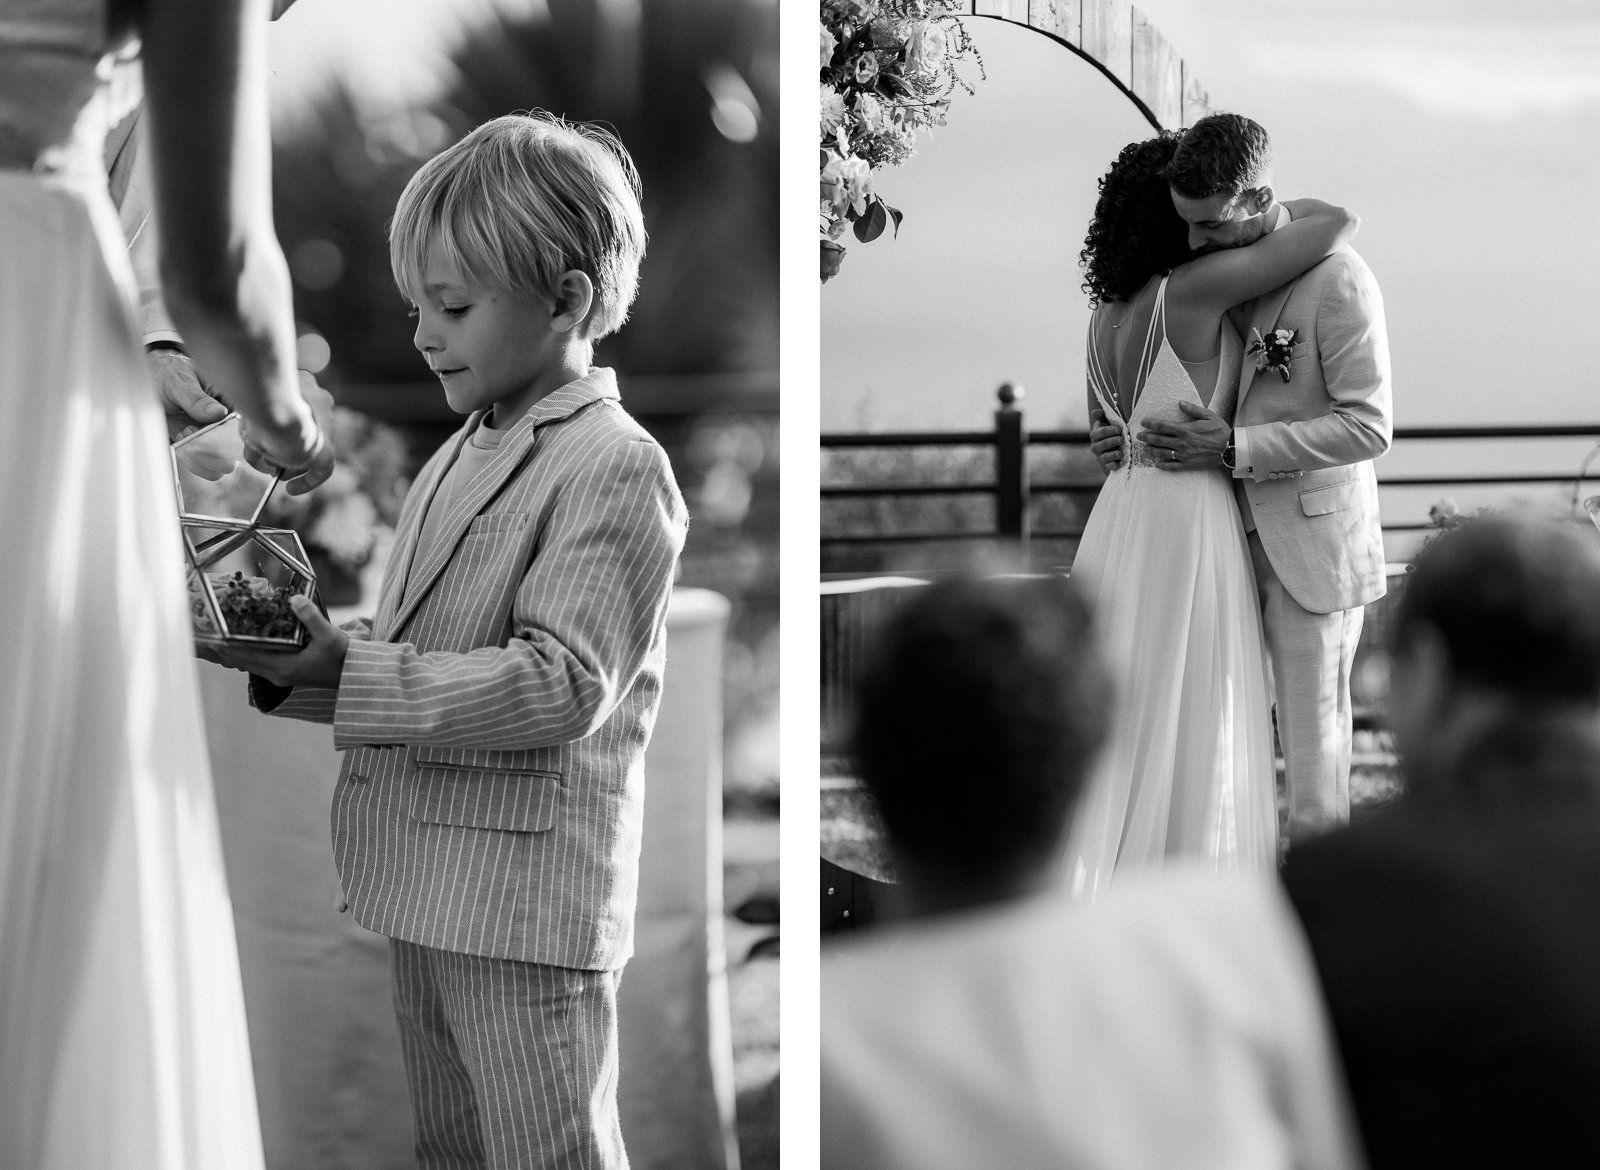 Photographie de Mathieu Dété, photographe de mariage à Saint-Pierre sur l'île de la Réunion 974, présentant des images en noir et blanc, avec un enfant apportant les alliances aux mariés, sur le vif, d'un mariage au Jardin d'Ama